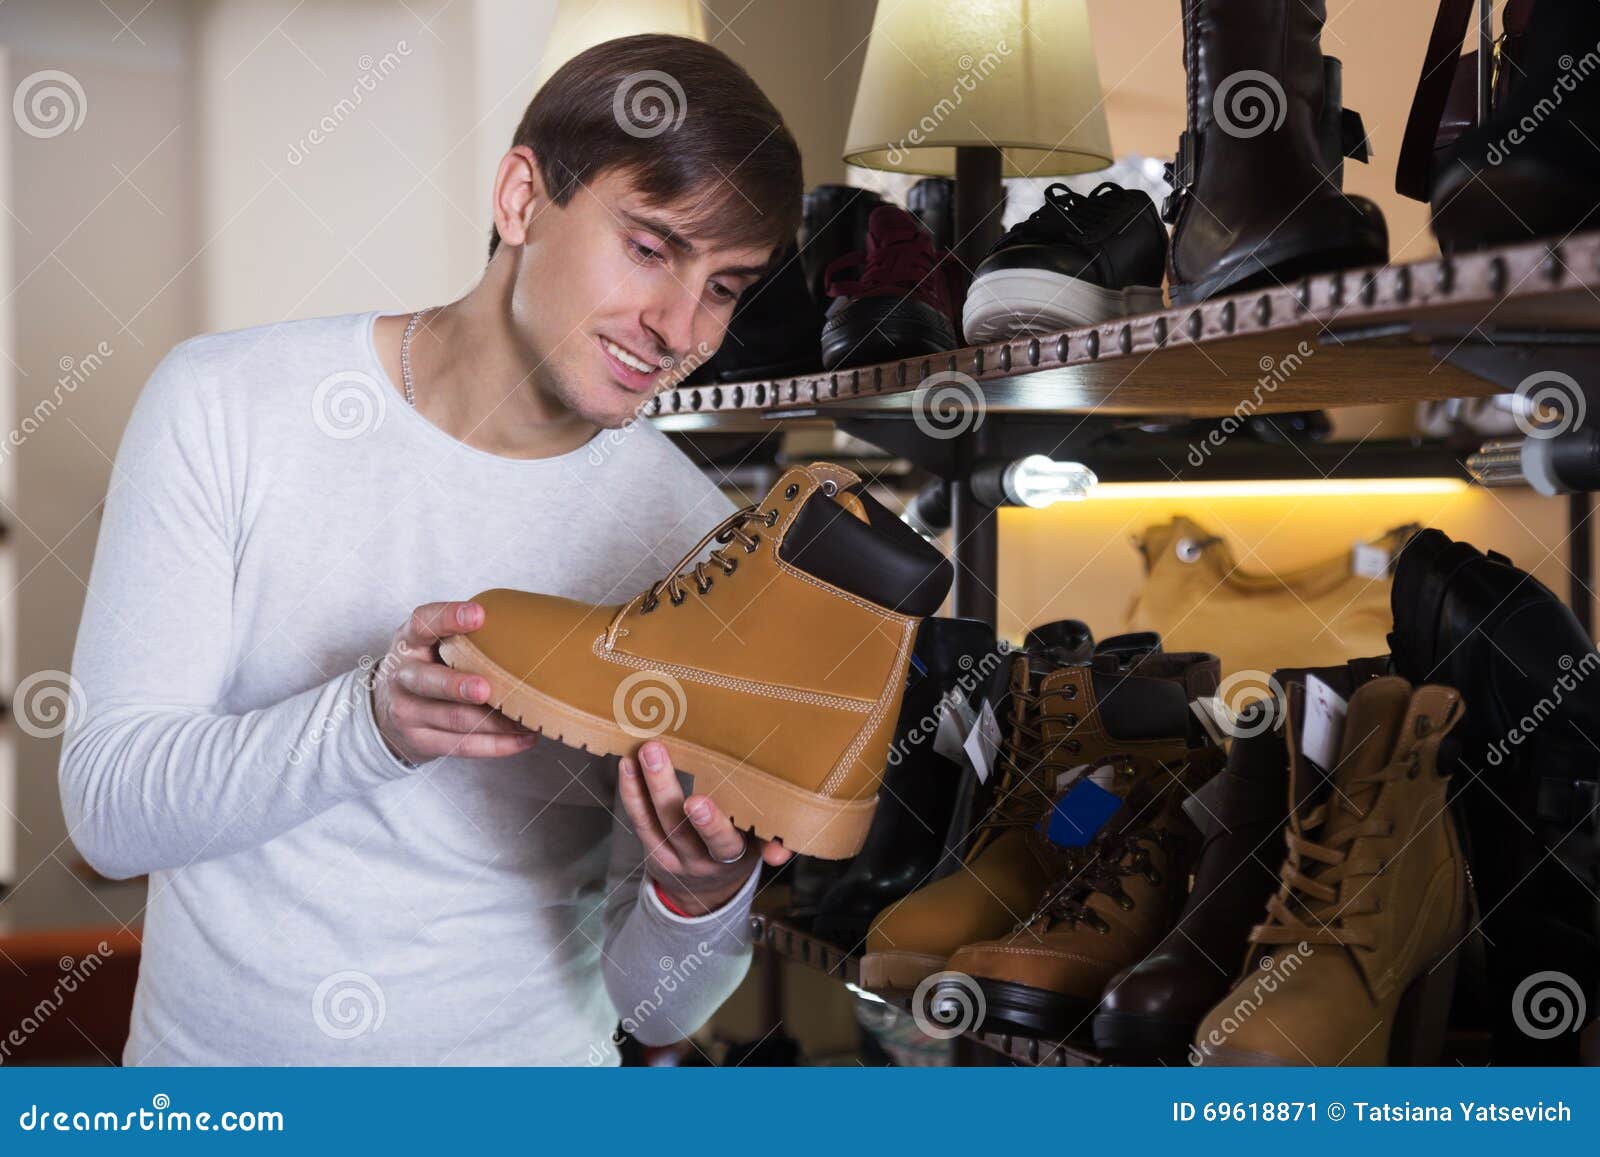 Мужчина выбирает обувь. Мужчина выбирает обувь в магазине. Мужчина выбирает обувь в магазин фото. Ведущий в обувном магазине.